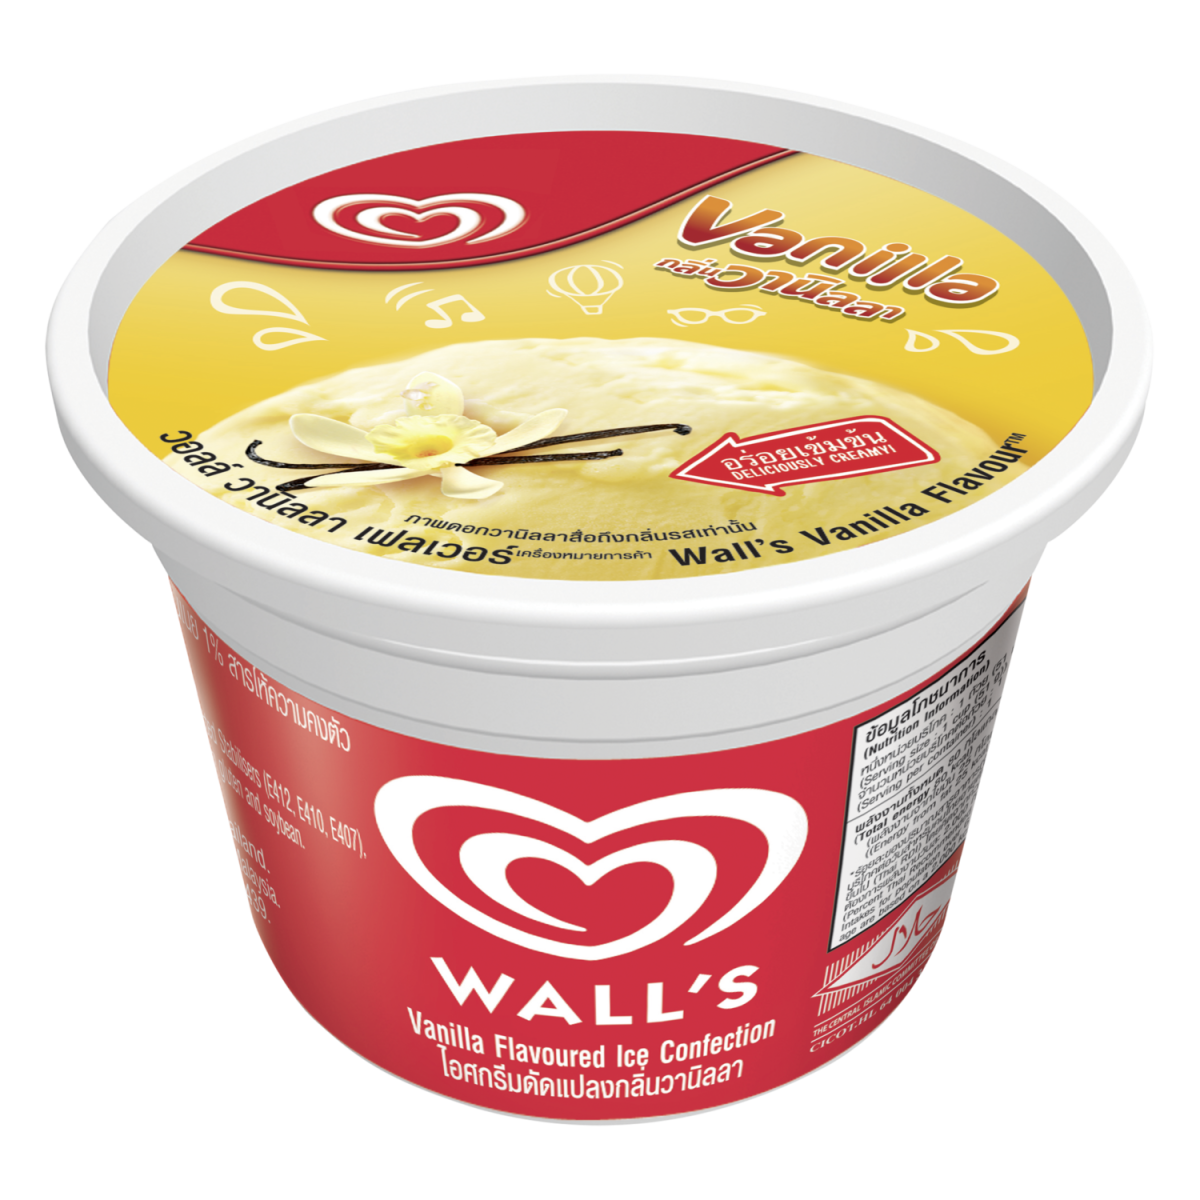 Какой жир в мороженом. Мороженое. Wall's мороженое. Низкокалорийное мороженое. Мороженое фирмы.